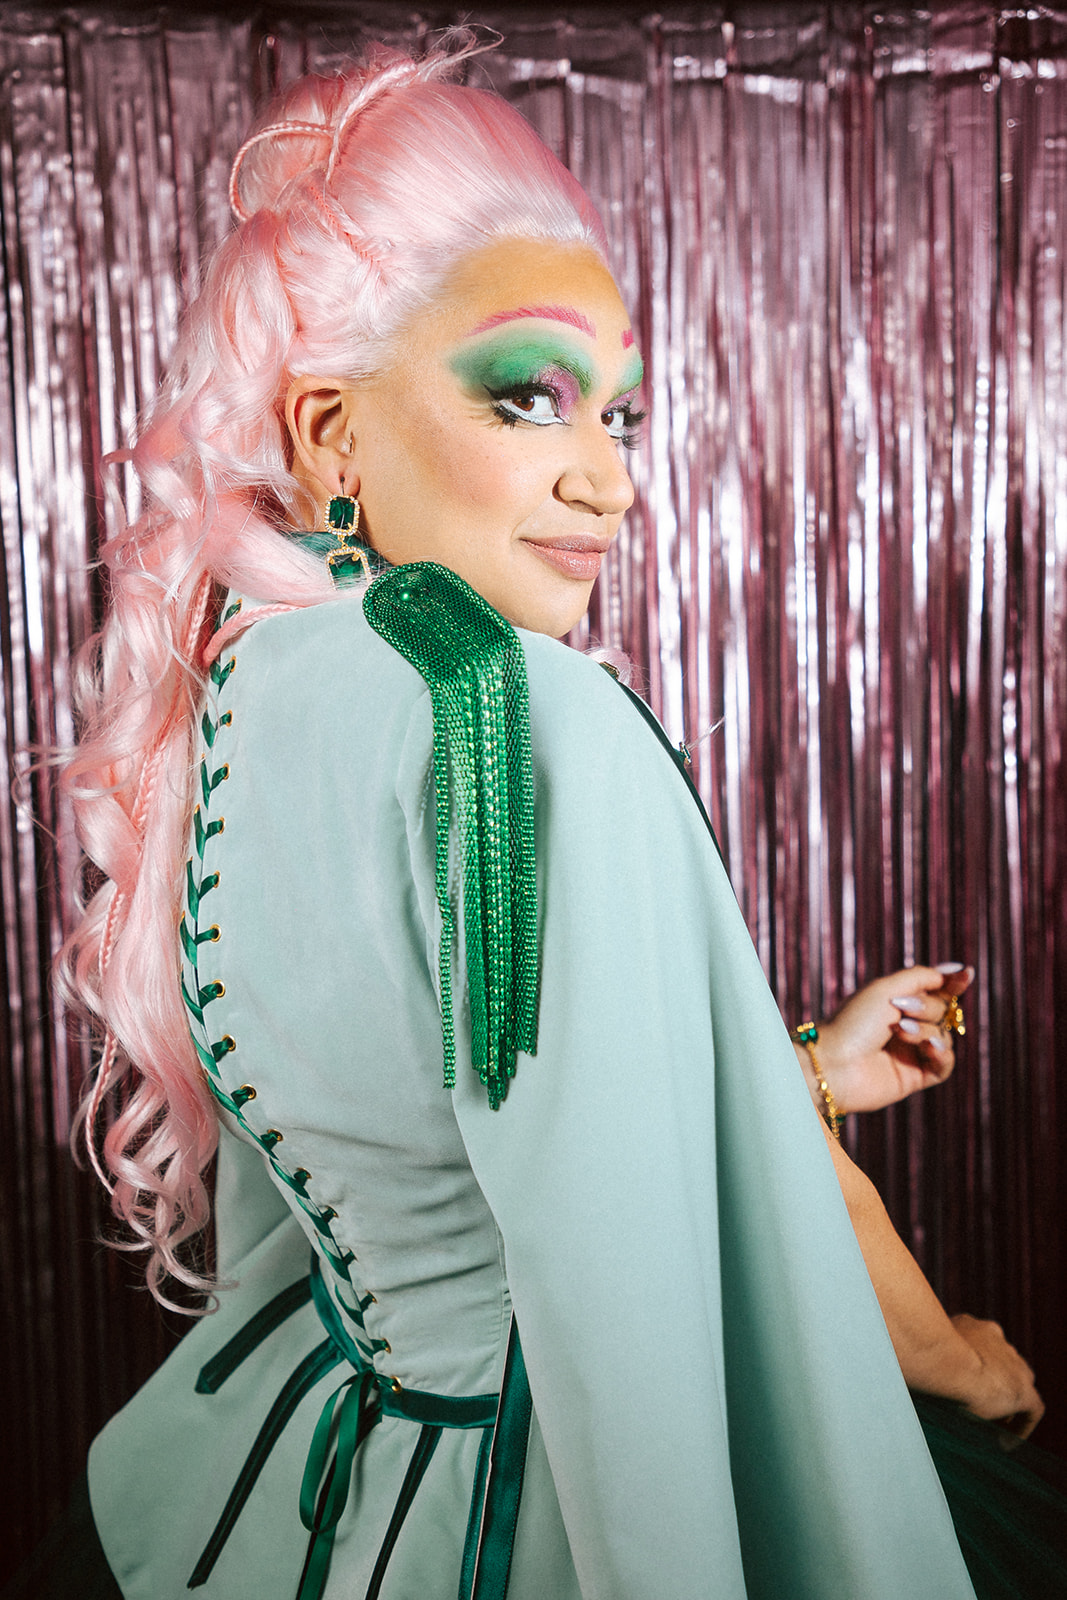 Drag queen portant une tenue casse-noisette verte et rose.